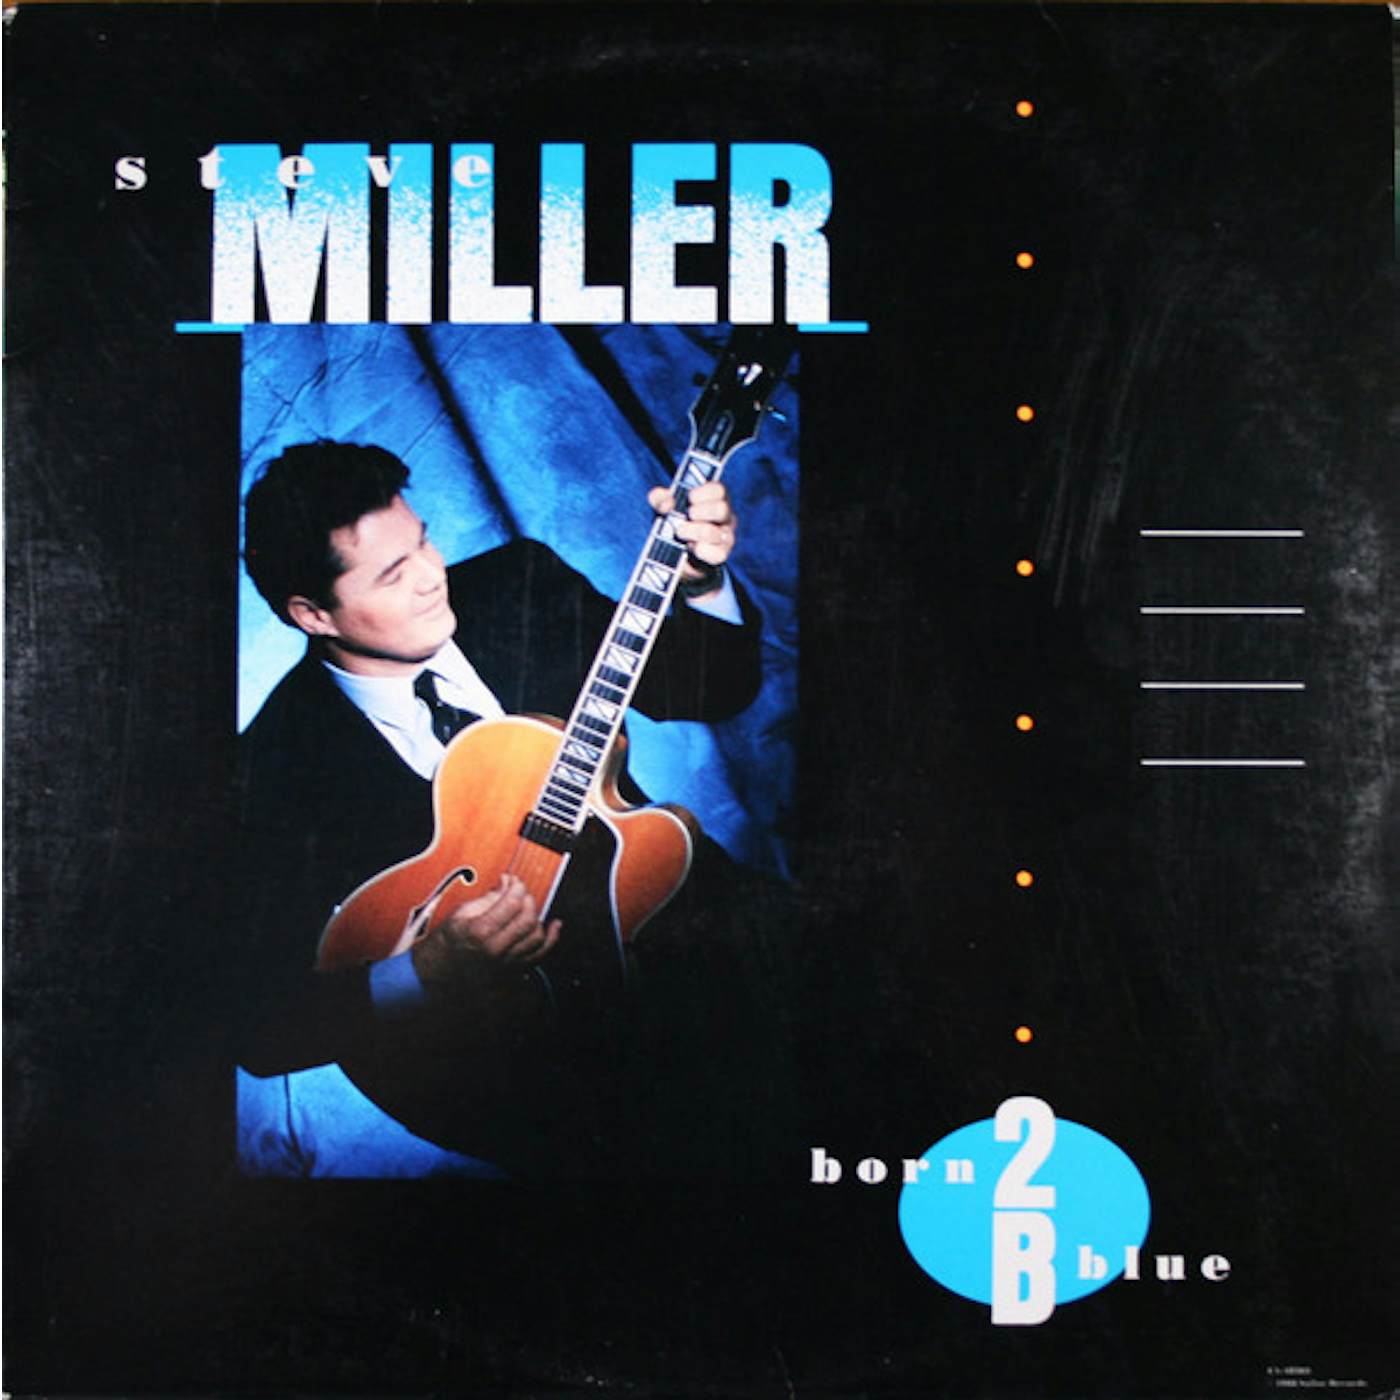 Steve Miller Band Born 2 B Blue Vinyl Record